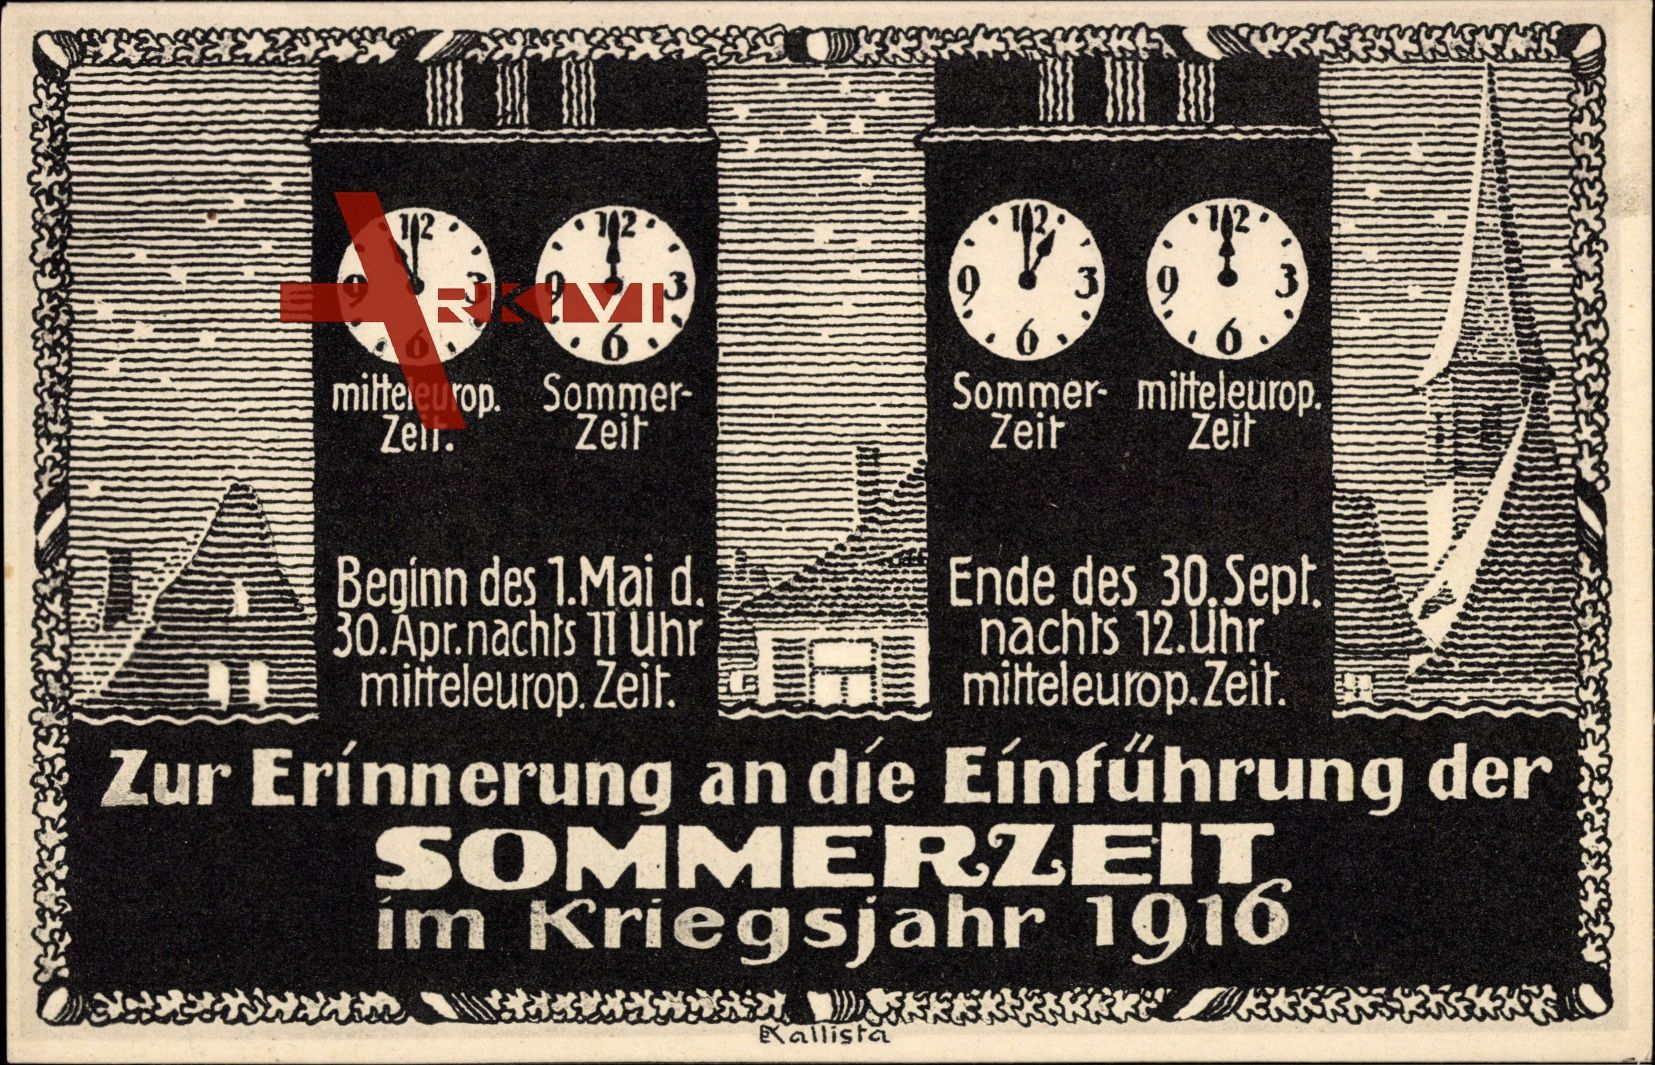 Einführung der Sommerzeit im Kriegsjahr 1916, Uhren